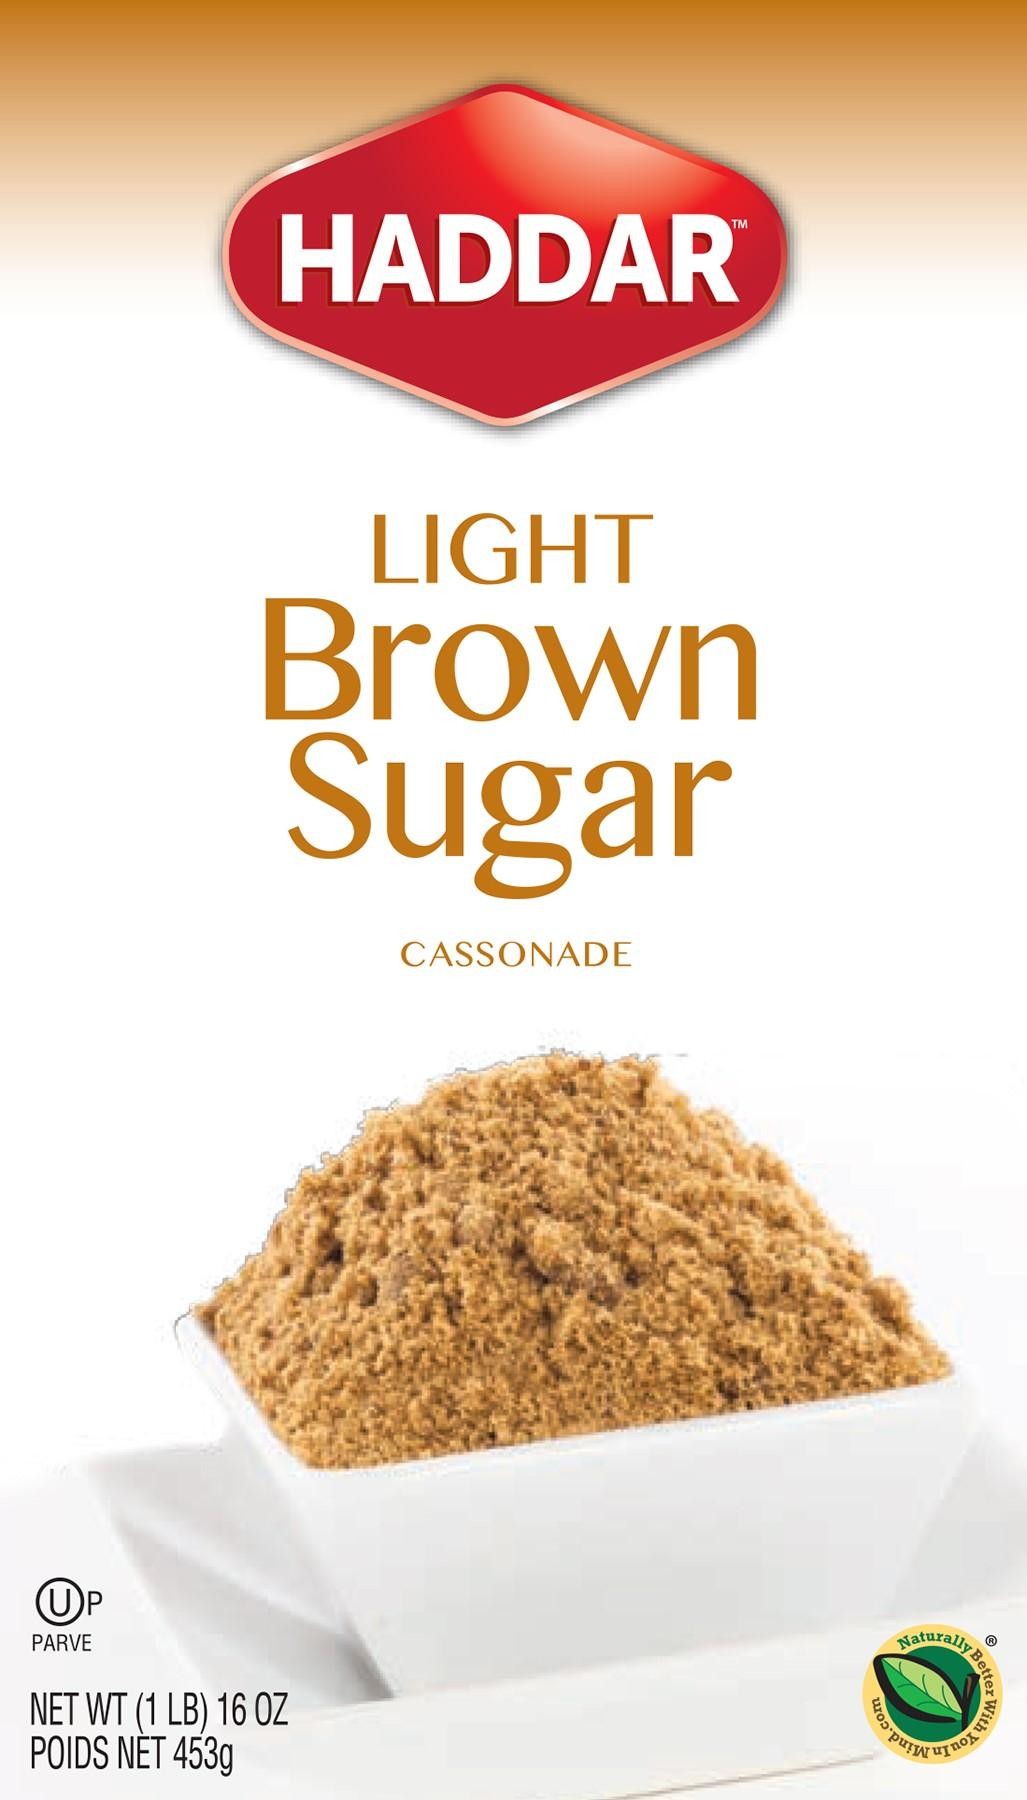 Haddar Light Brown Sugar, 16 Oz